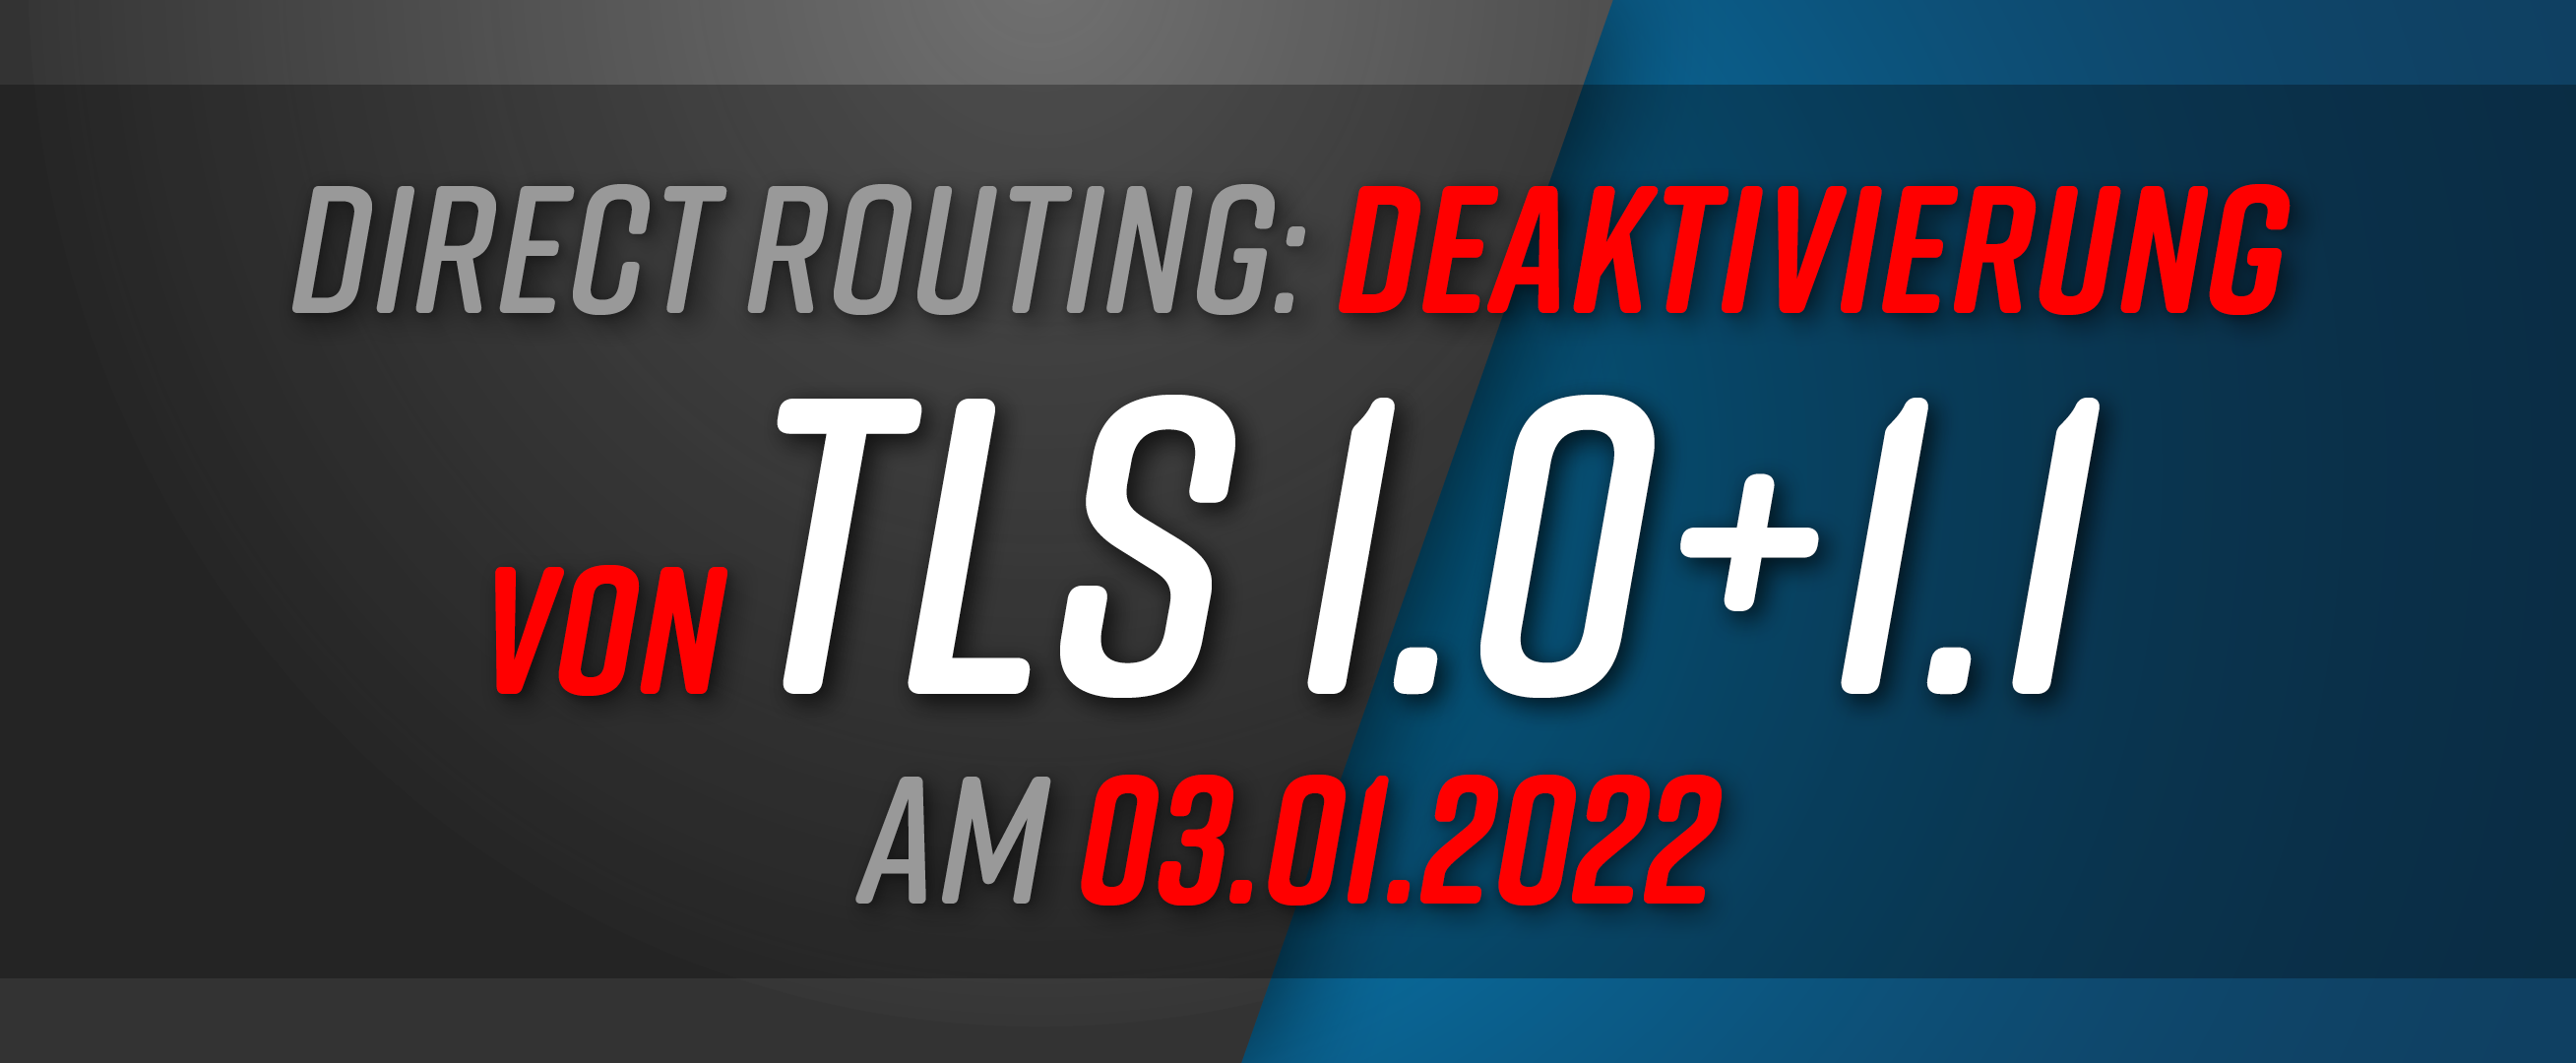 Deaktivierung der Transport Layer Security (TLS) 1.0 und 1.1 an der Direct Routing Schnittstelle am 03.01.2022 durch Microsoft.